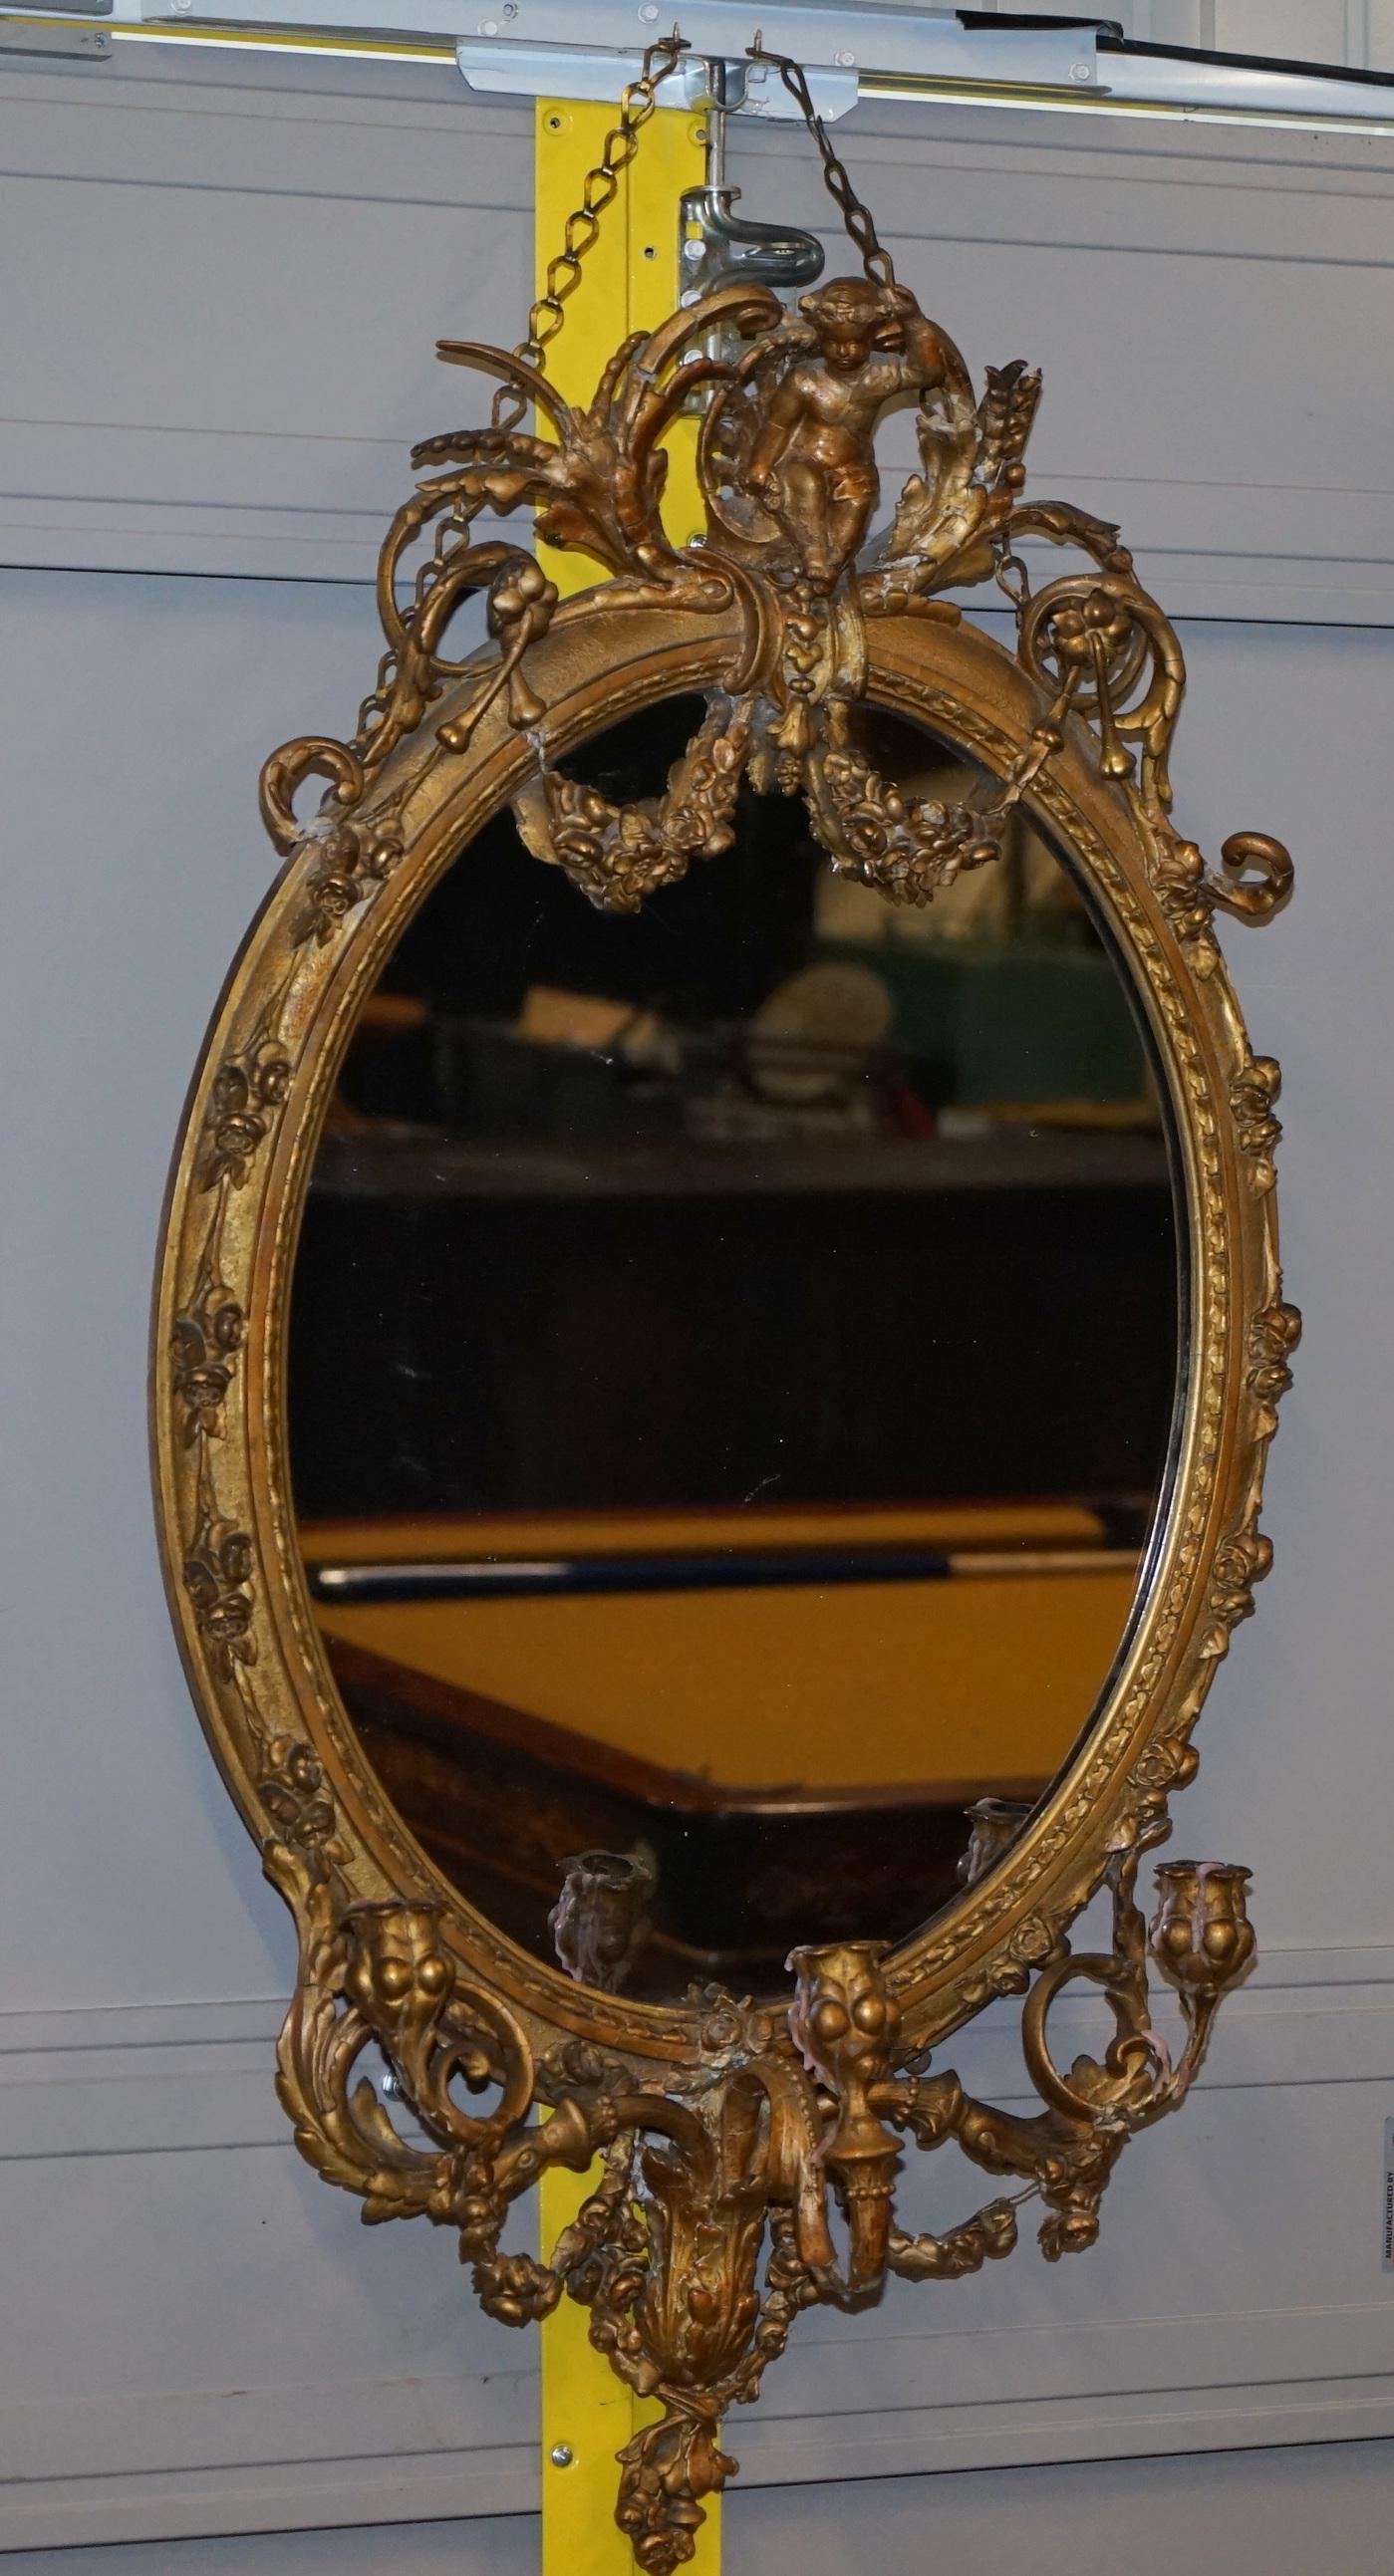 Nous sommes ravis de vous présenter ce très rare miroir Girandole datant d'environ 1800, encadré d'or et de dorure, avec son verre au mercure d'origine légèrement usé

Une trouvaille très rare, je n'en ai jamais vu d'autre avec un Putti sur le